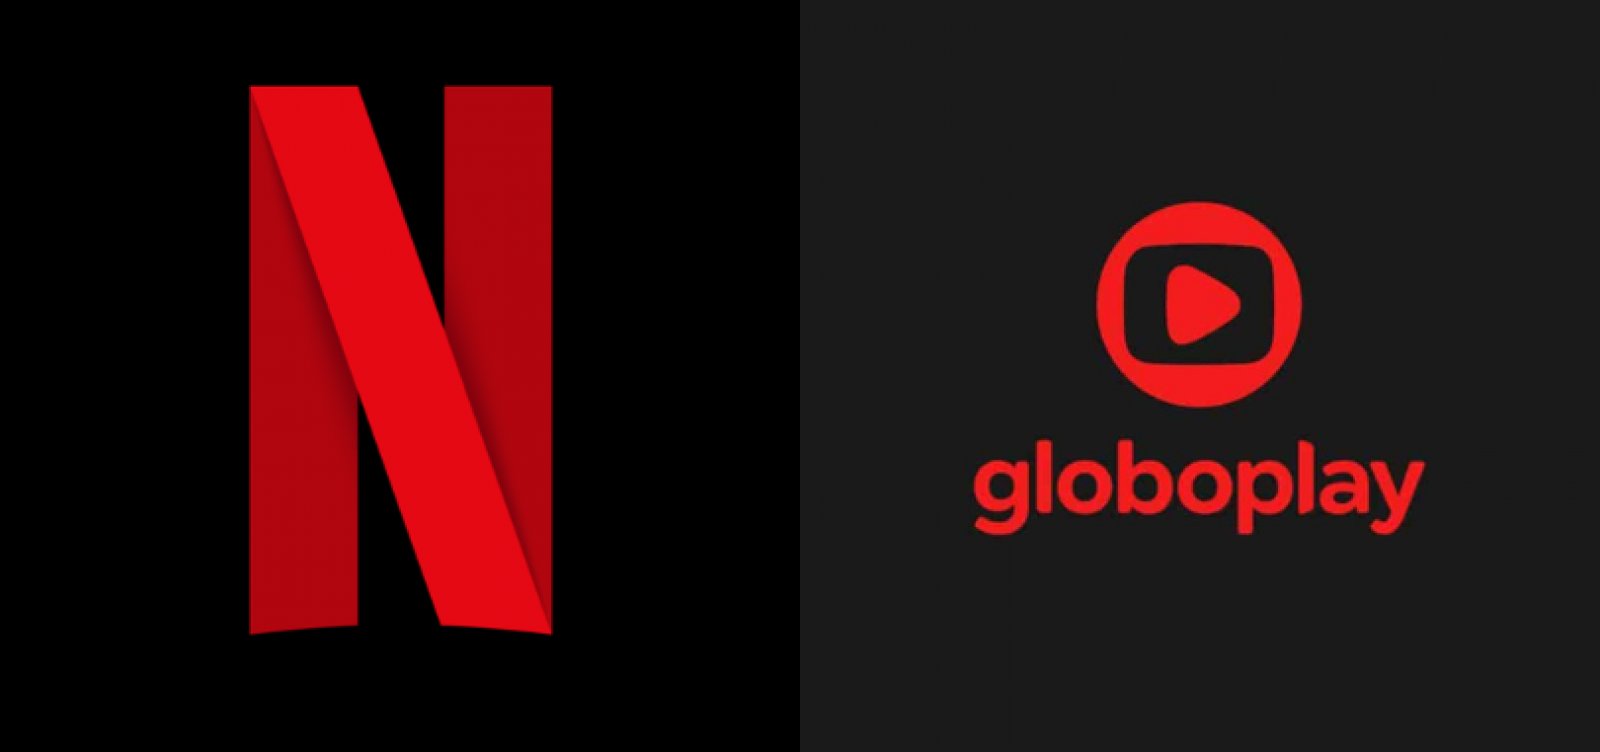 Globoplay passa Netflix em número de assinantes no Brasil